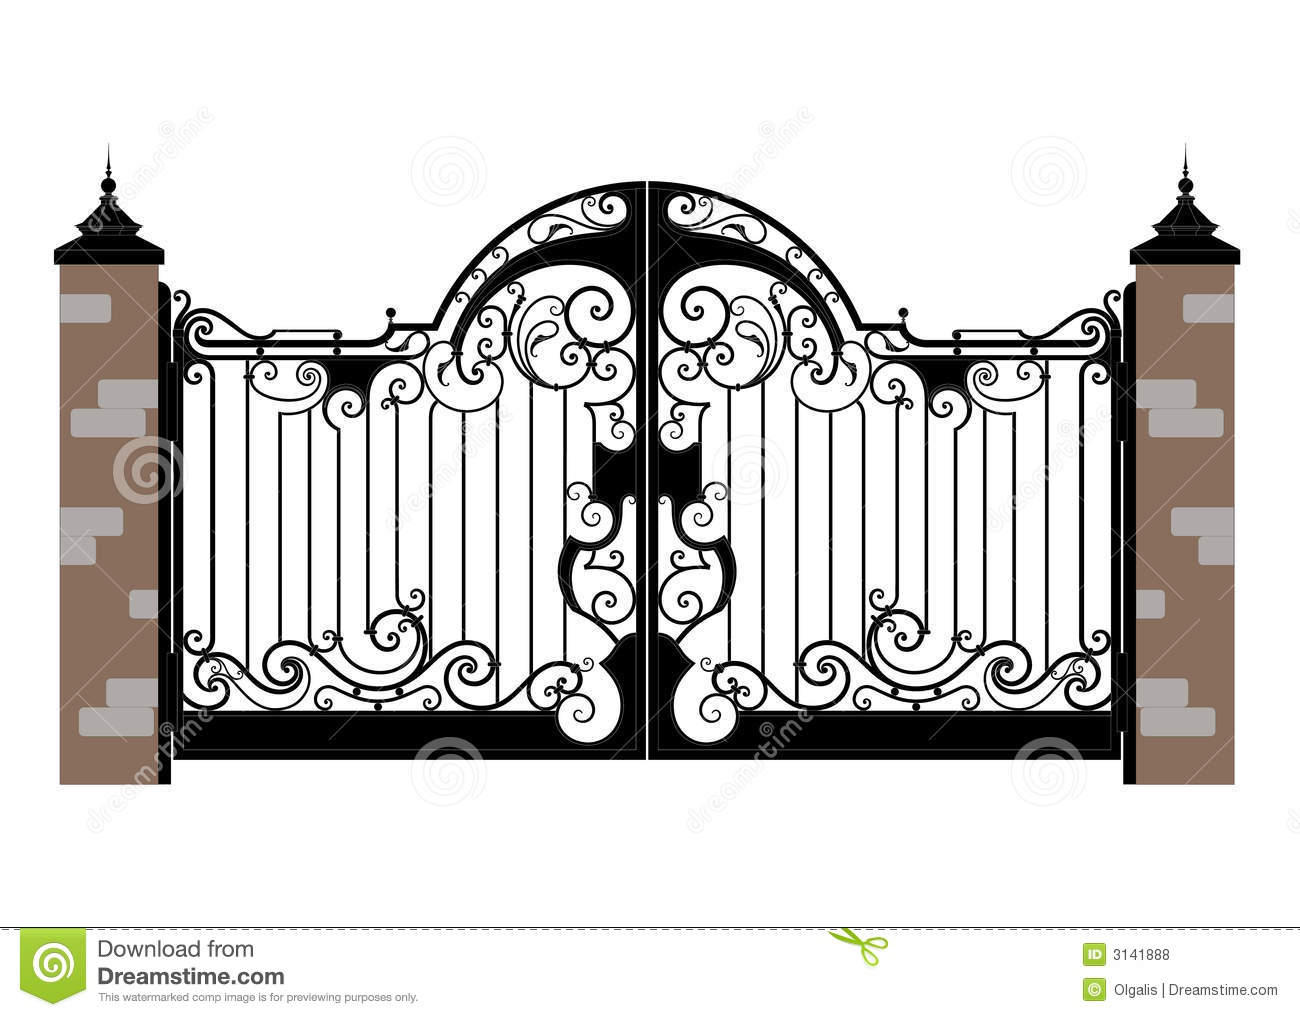 Just a Gate..!